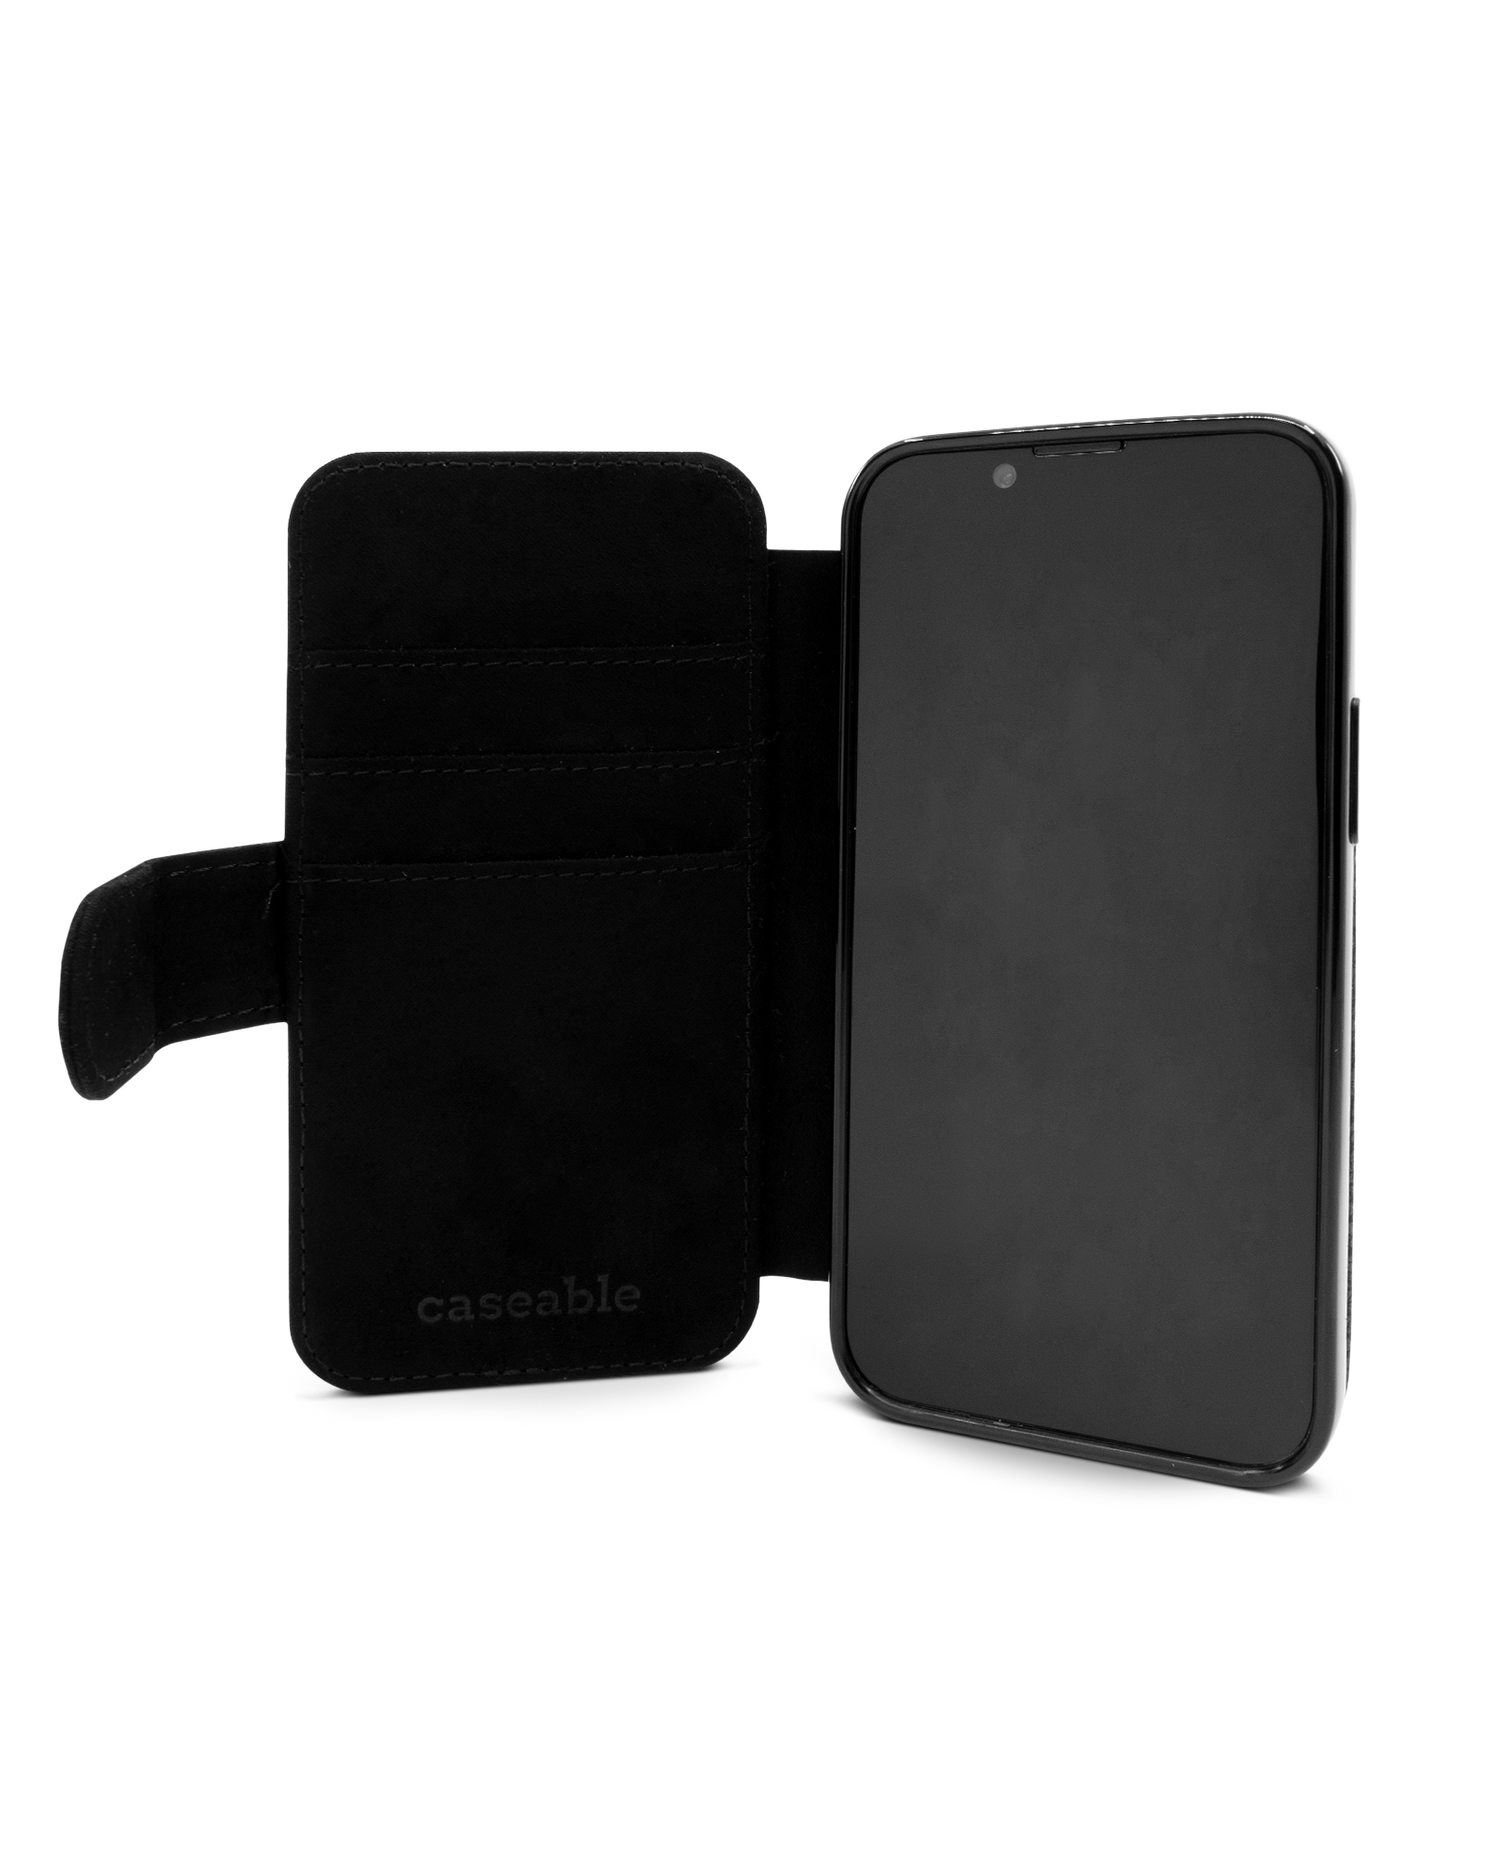 Plaid Market Bag Wallet Phone Case Apple iPhone 13 mini: Inside View